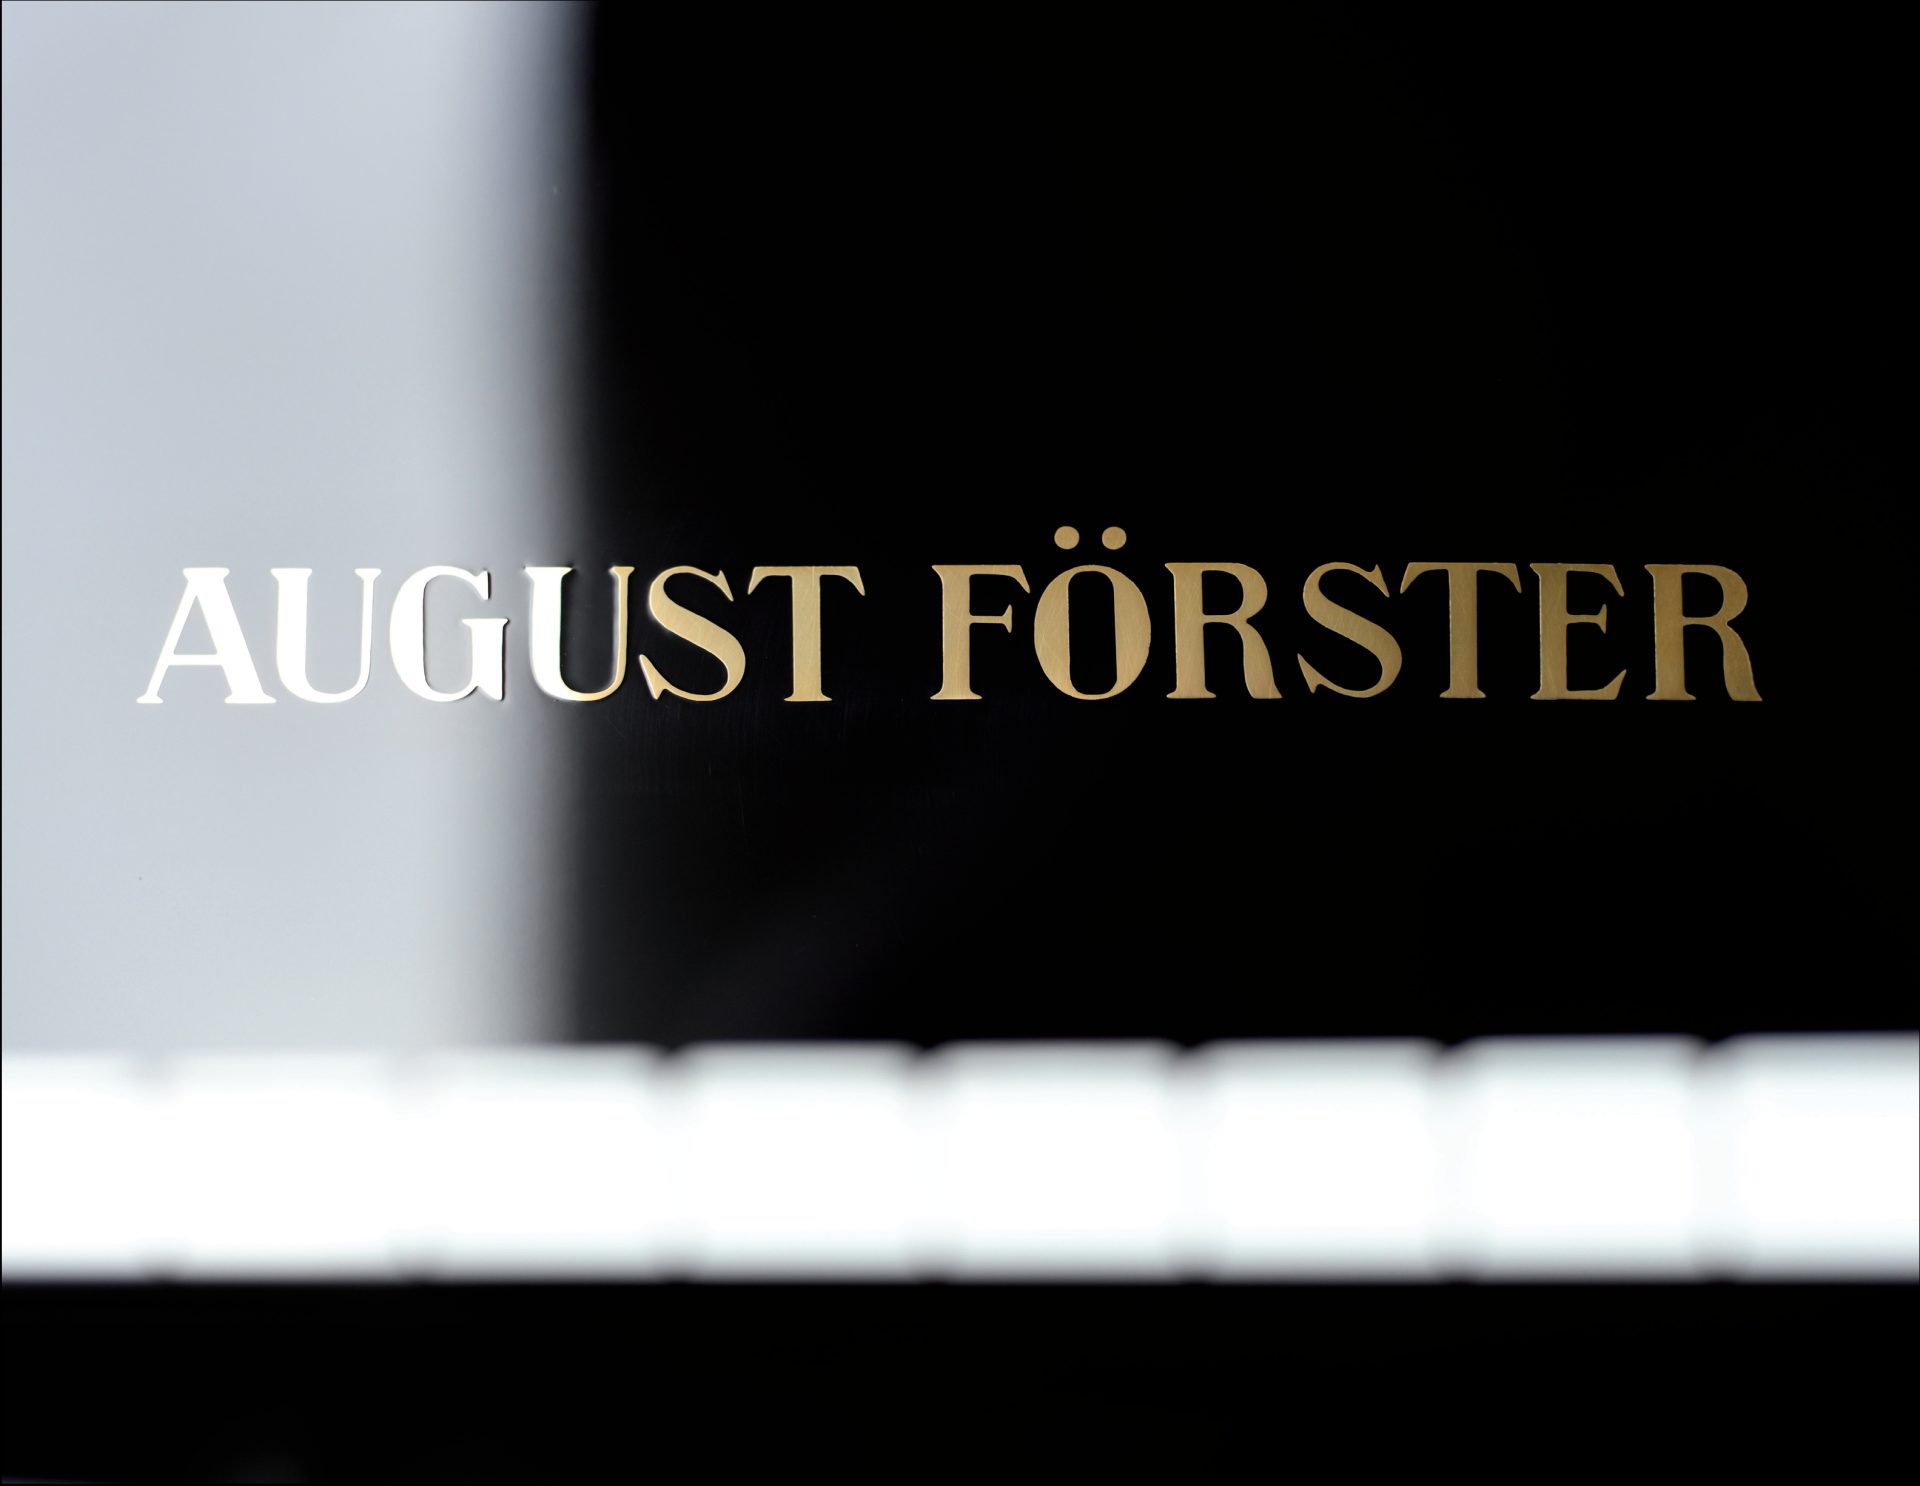 August Förster
275